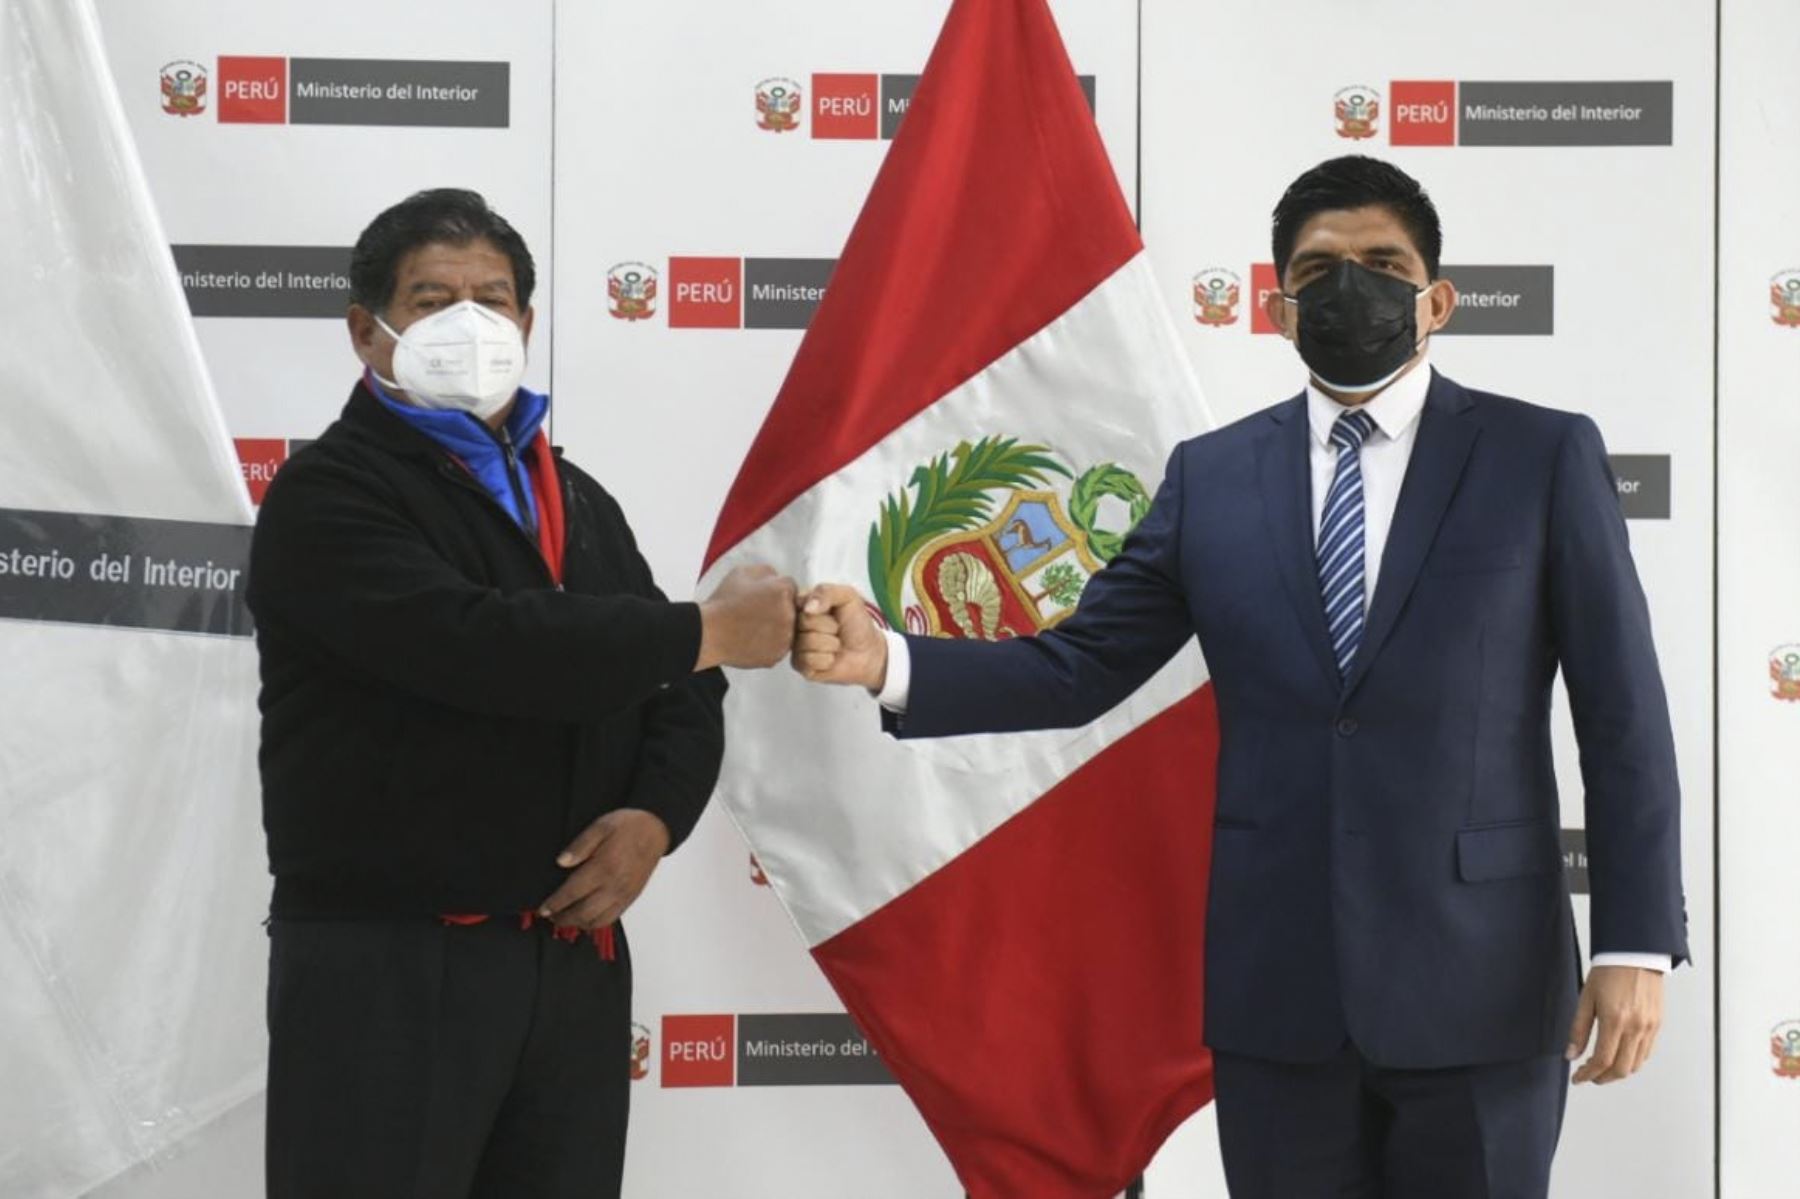 El ministro del Interior, Juan Carrasco, y el alcalde de La Víctoria, Luis Gutiérrez, se ponen de acuerdo en impulsar medidas de seguridad en el emporio comercial, Gamarra.  ANDINA/ Mininter